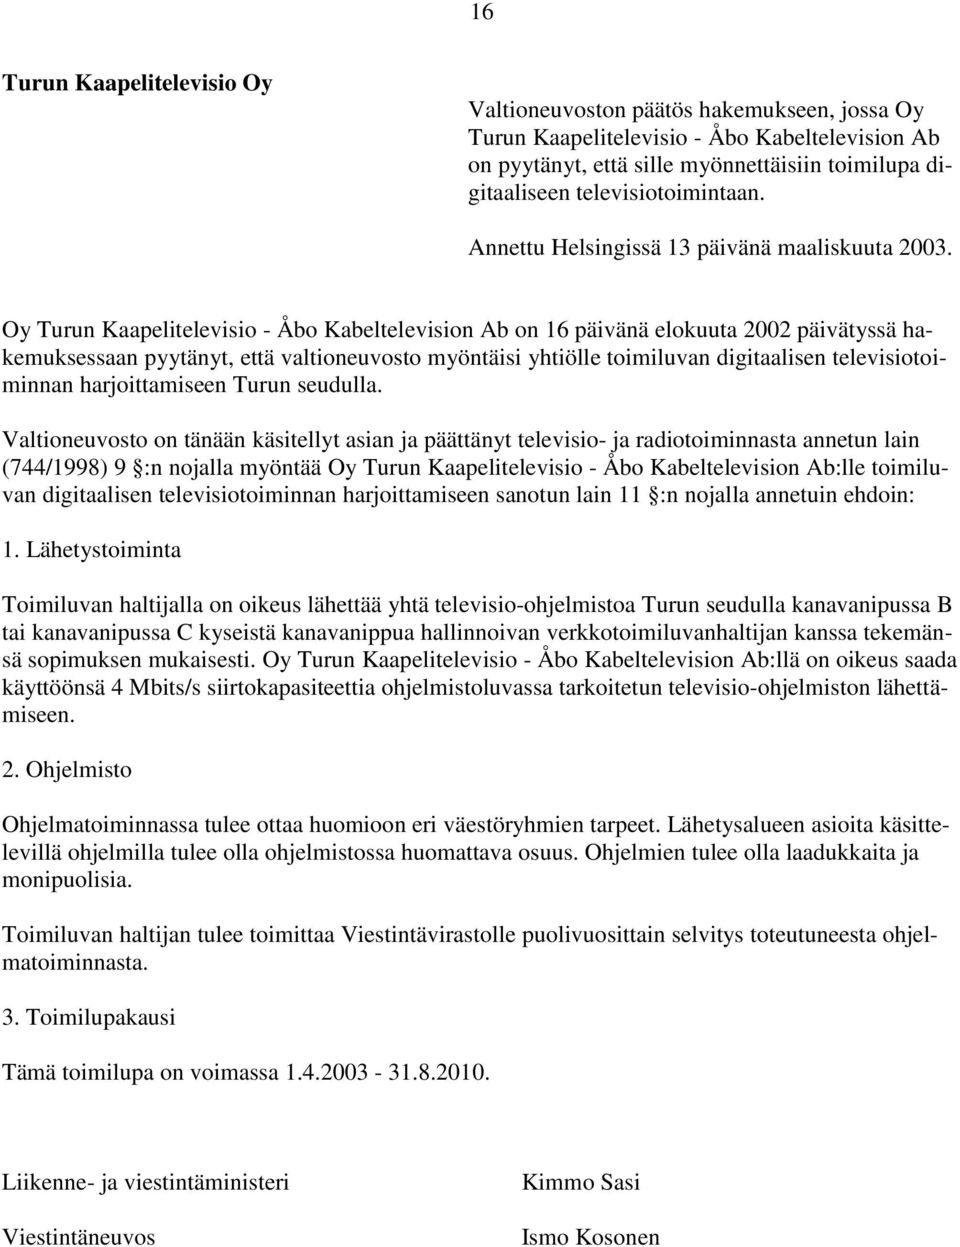 Oy Turun Kaapelitelevisio - Åbo Kabeltelevision Ab on 16 päivänä elokuuta 2002 päivätyssä hakemuksessaan pyytänyt, että valtioneuvosto myöntäisi yhtiölle toimiluvan digitaalisen televisiotoiminnan